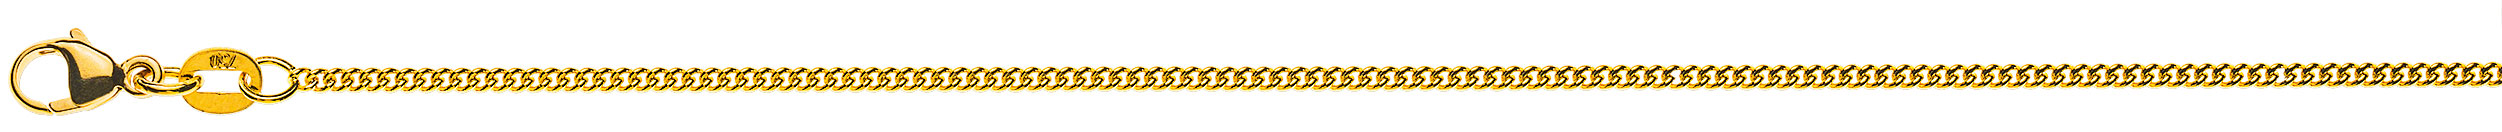 AURONOS Prestige Halskette Gelbgold 18K Rundpanzerkette 50cm 1.6mm